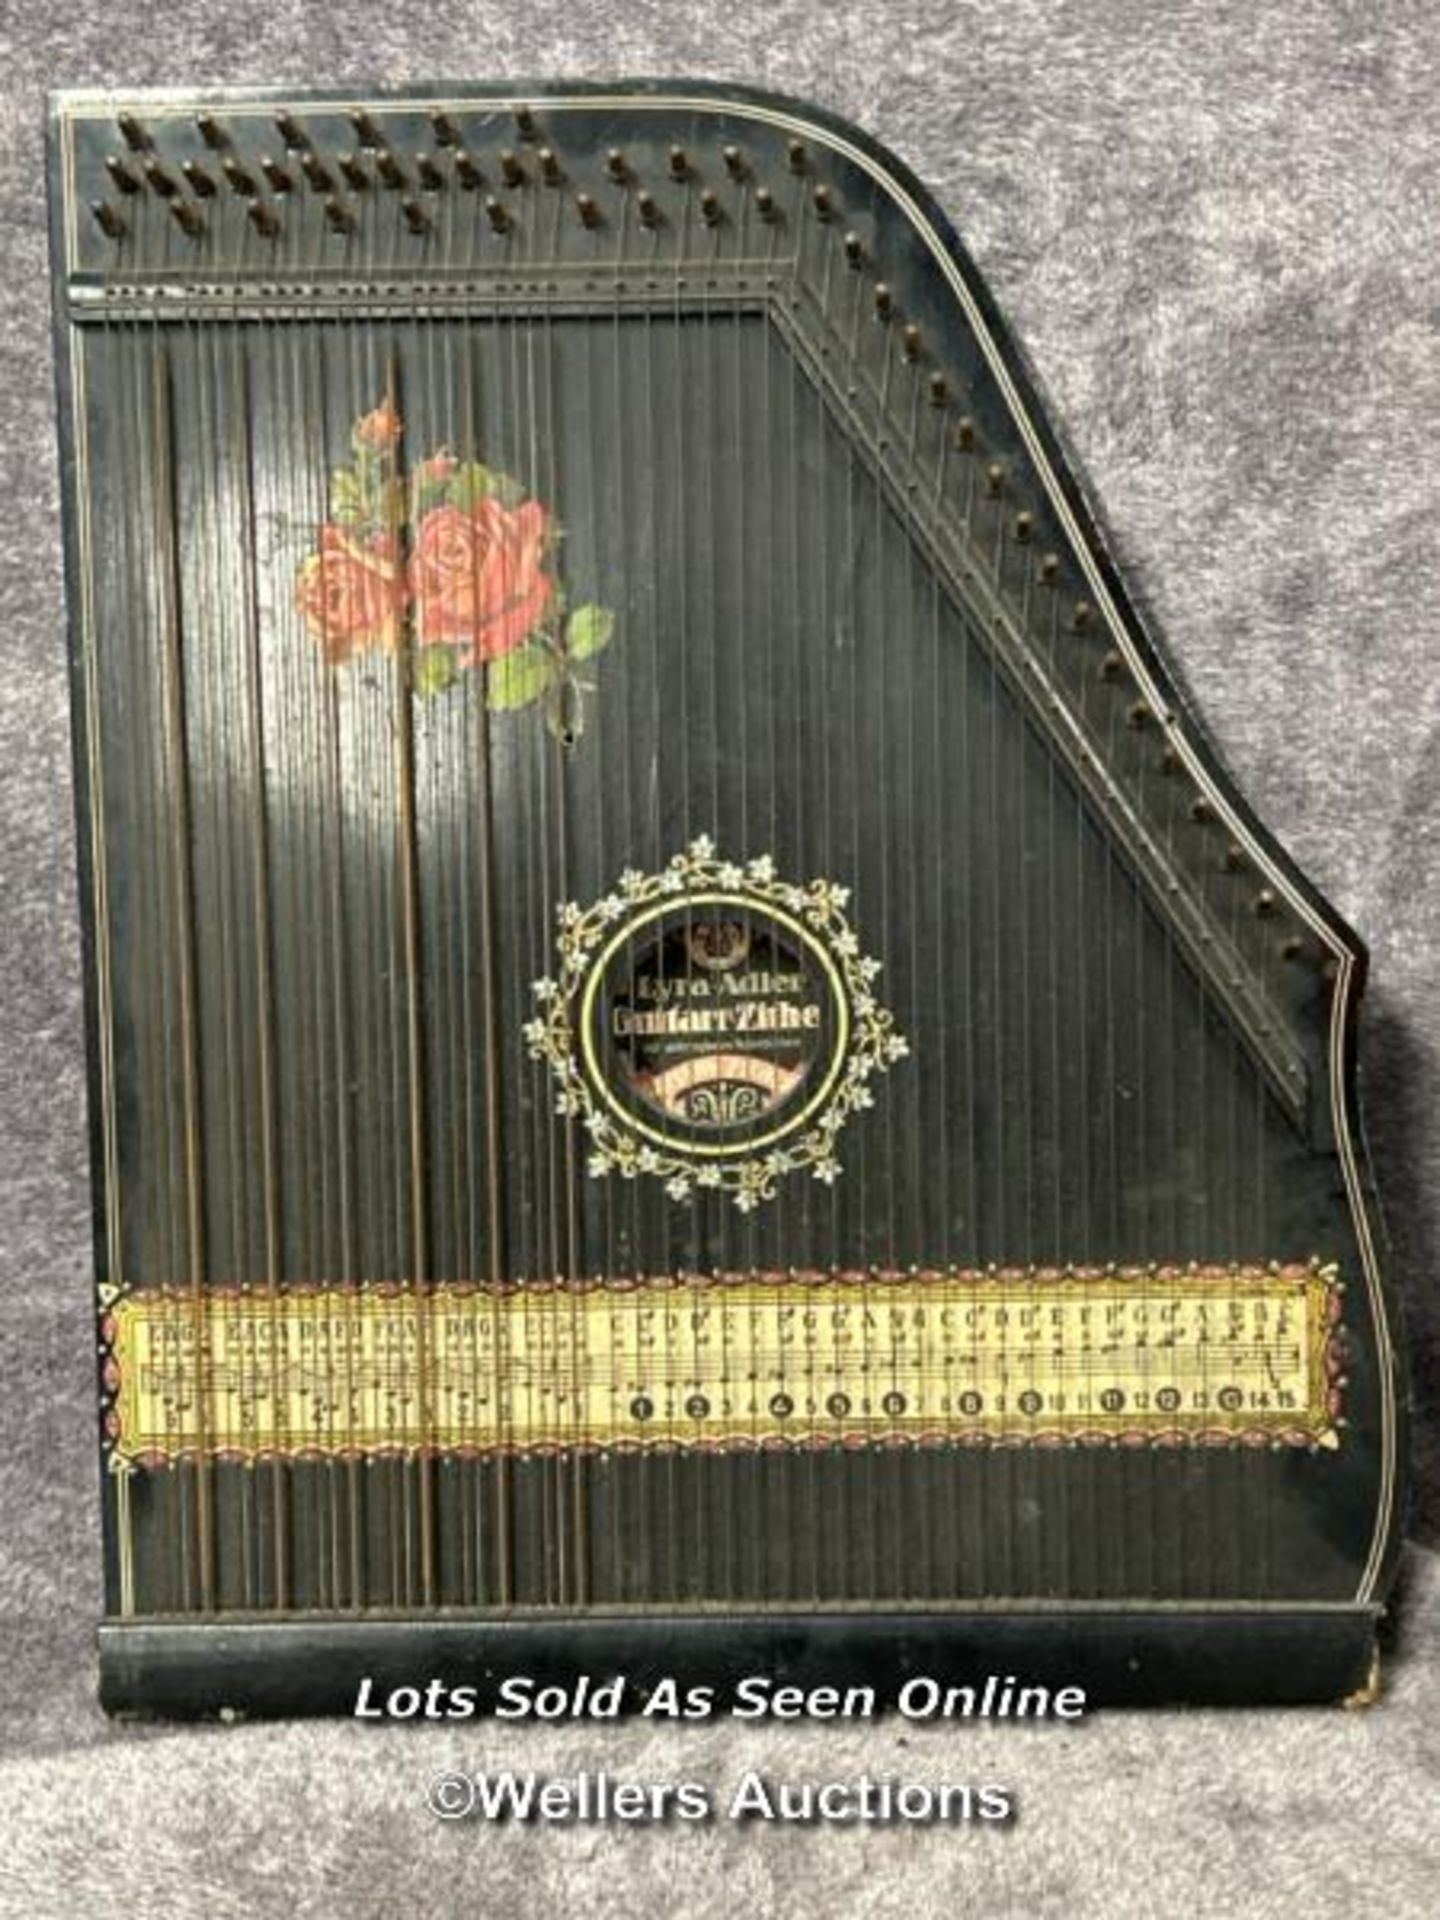 Vintage Lyra Adler Guitarr - Zither string instrument / AN31